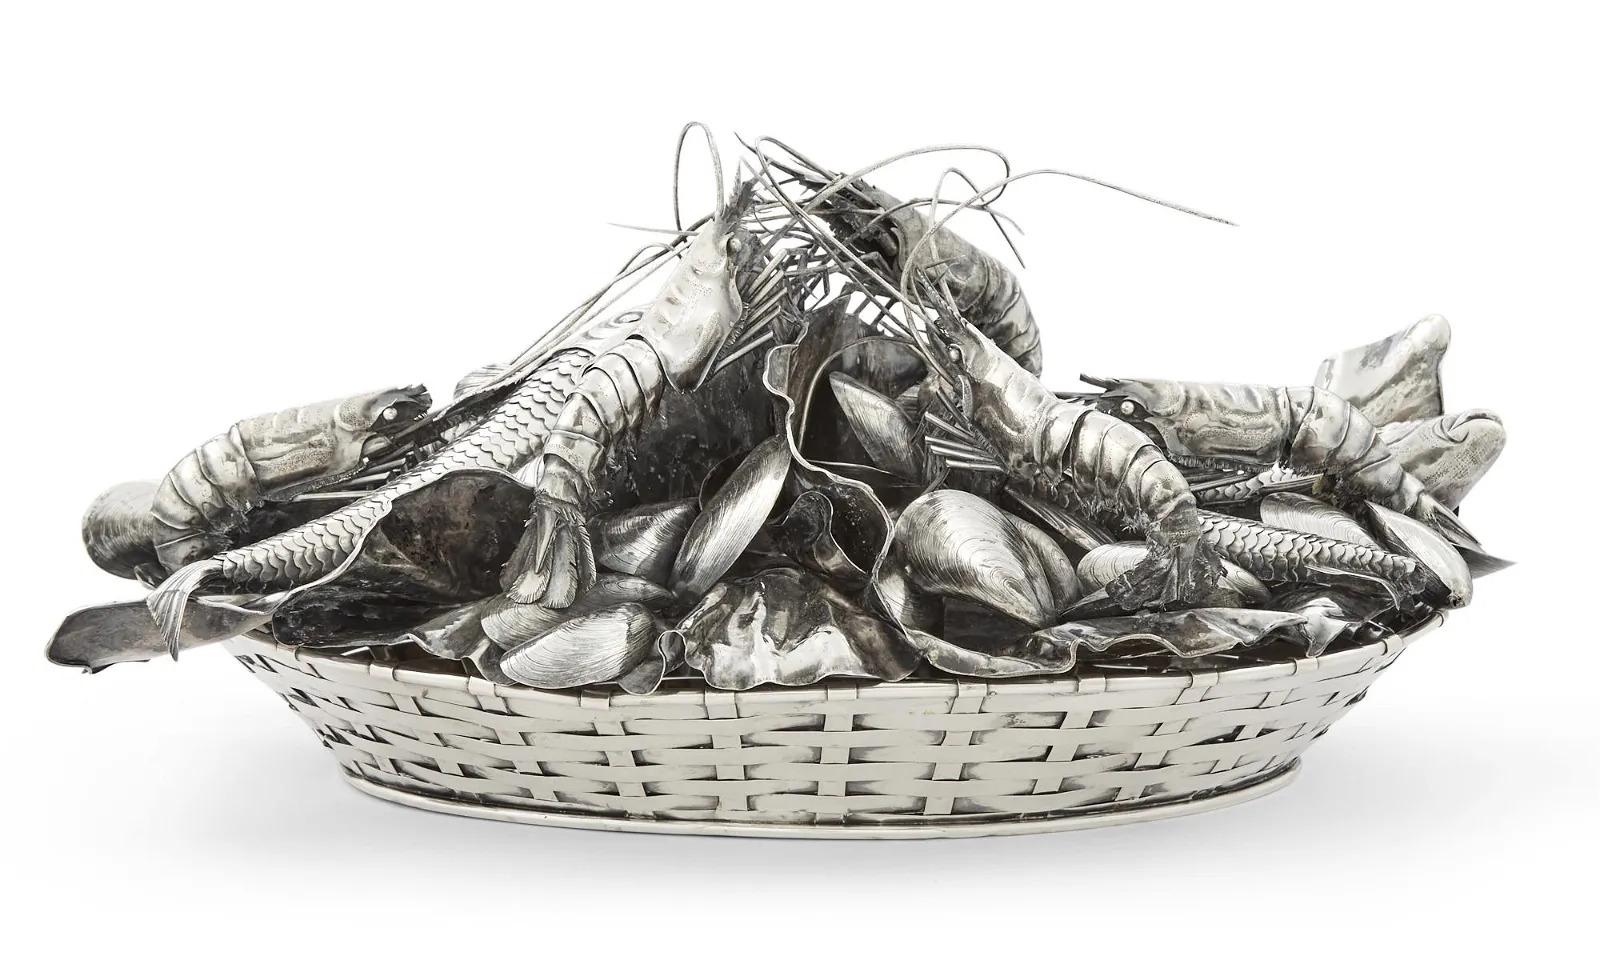 Rare panier à fruits de mer en argent italien de Mario Buccellati, circa 1950

Voici un trésor extraordinaire pour les collectionneurs et les connaisseurs : Un rare panier à fruits de mer en argent de Marin Buccellati. Réalisée avec un art